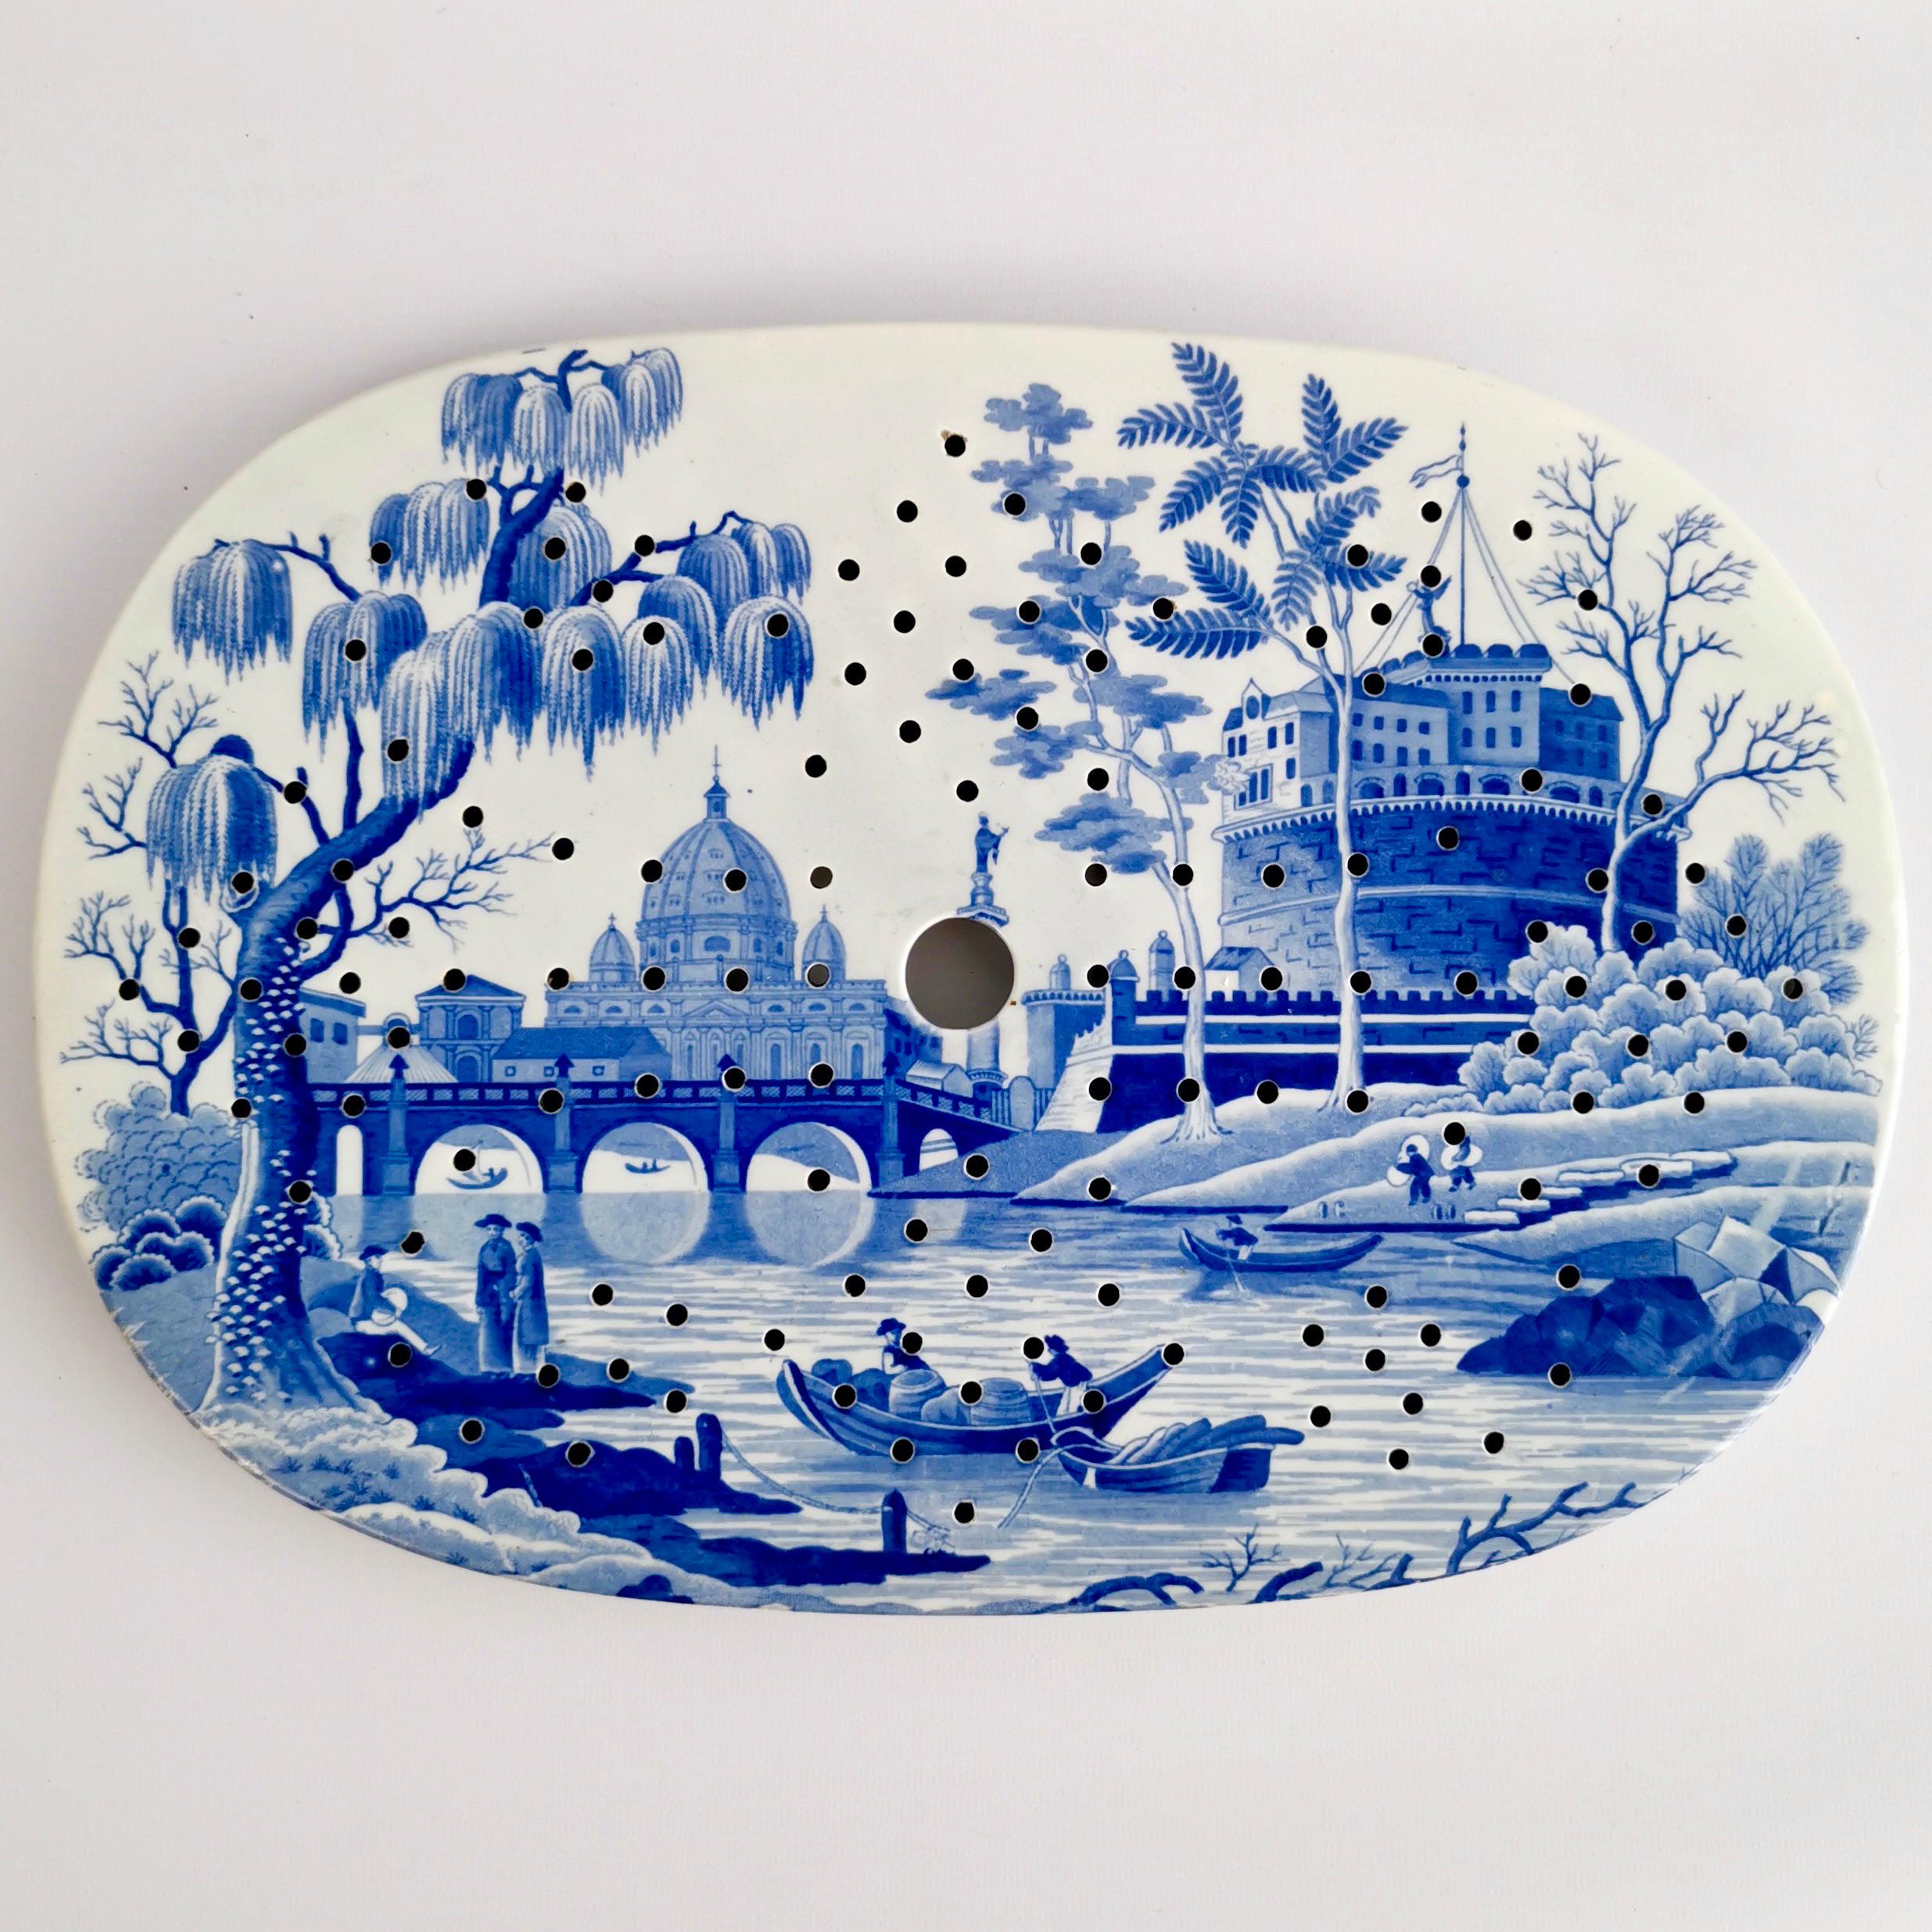 Spode Pearlware Drainer, "Tiber" Blue & White Regency 1811-1833